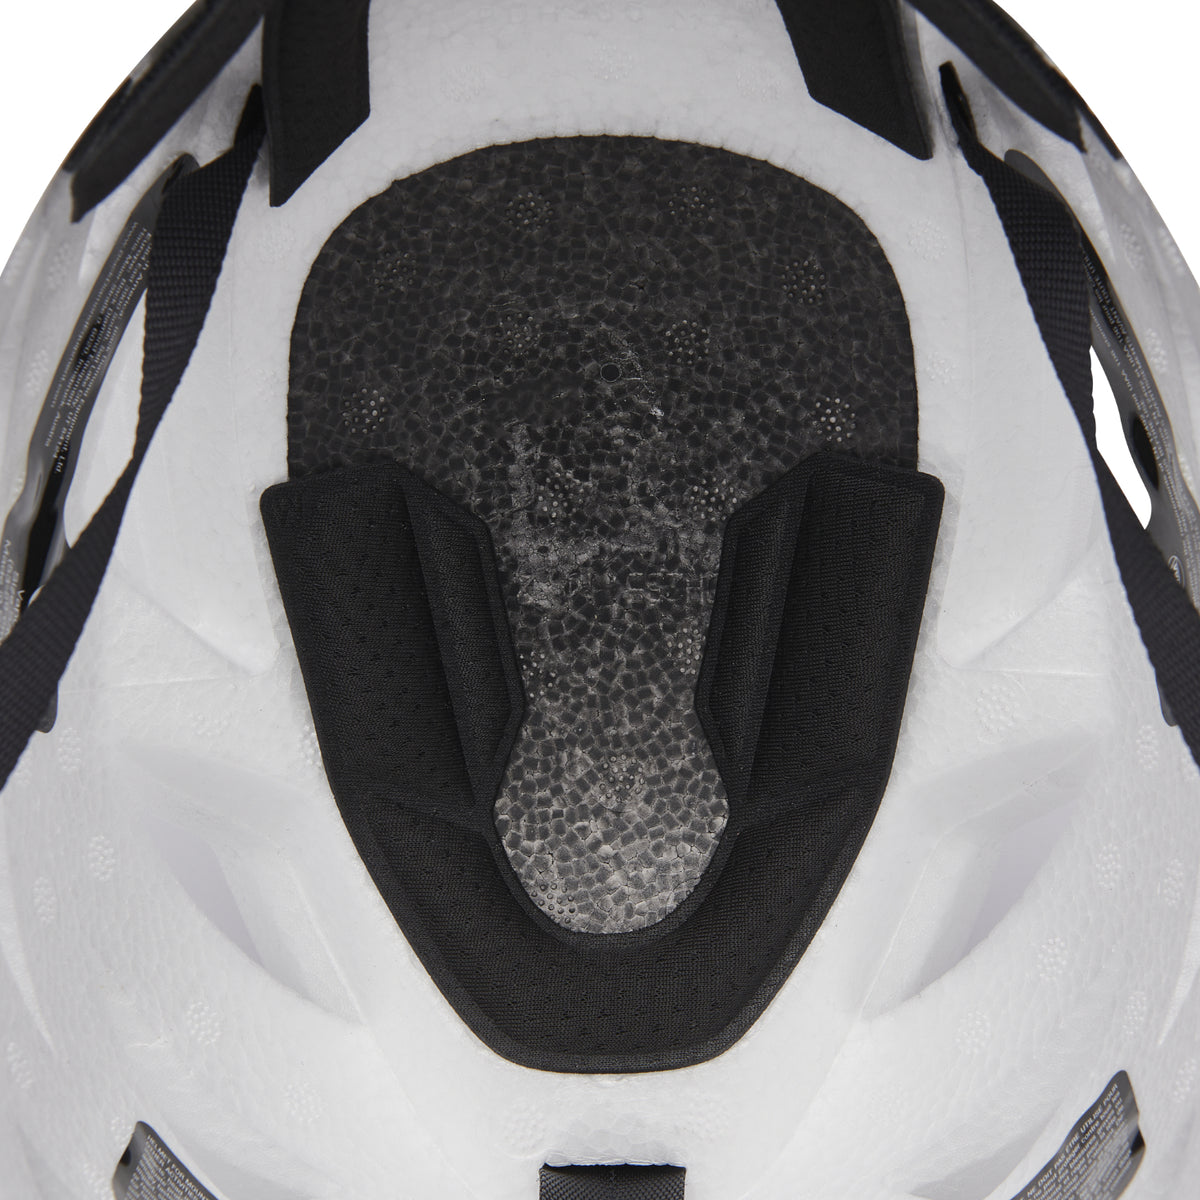 Black Diamond Vapor helmet in white with a black logo helmet padding